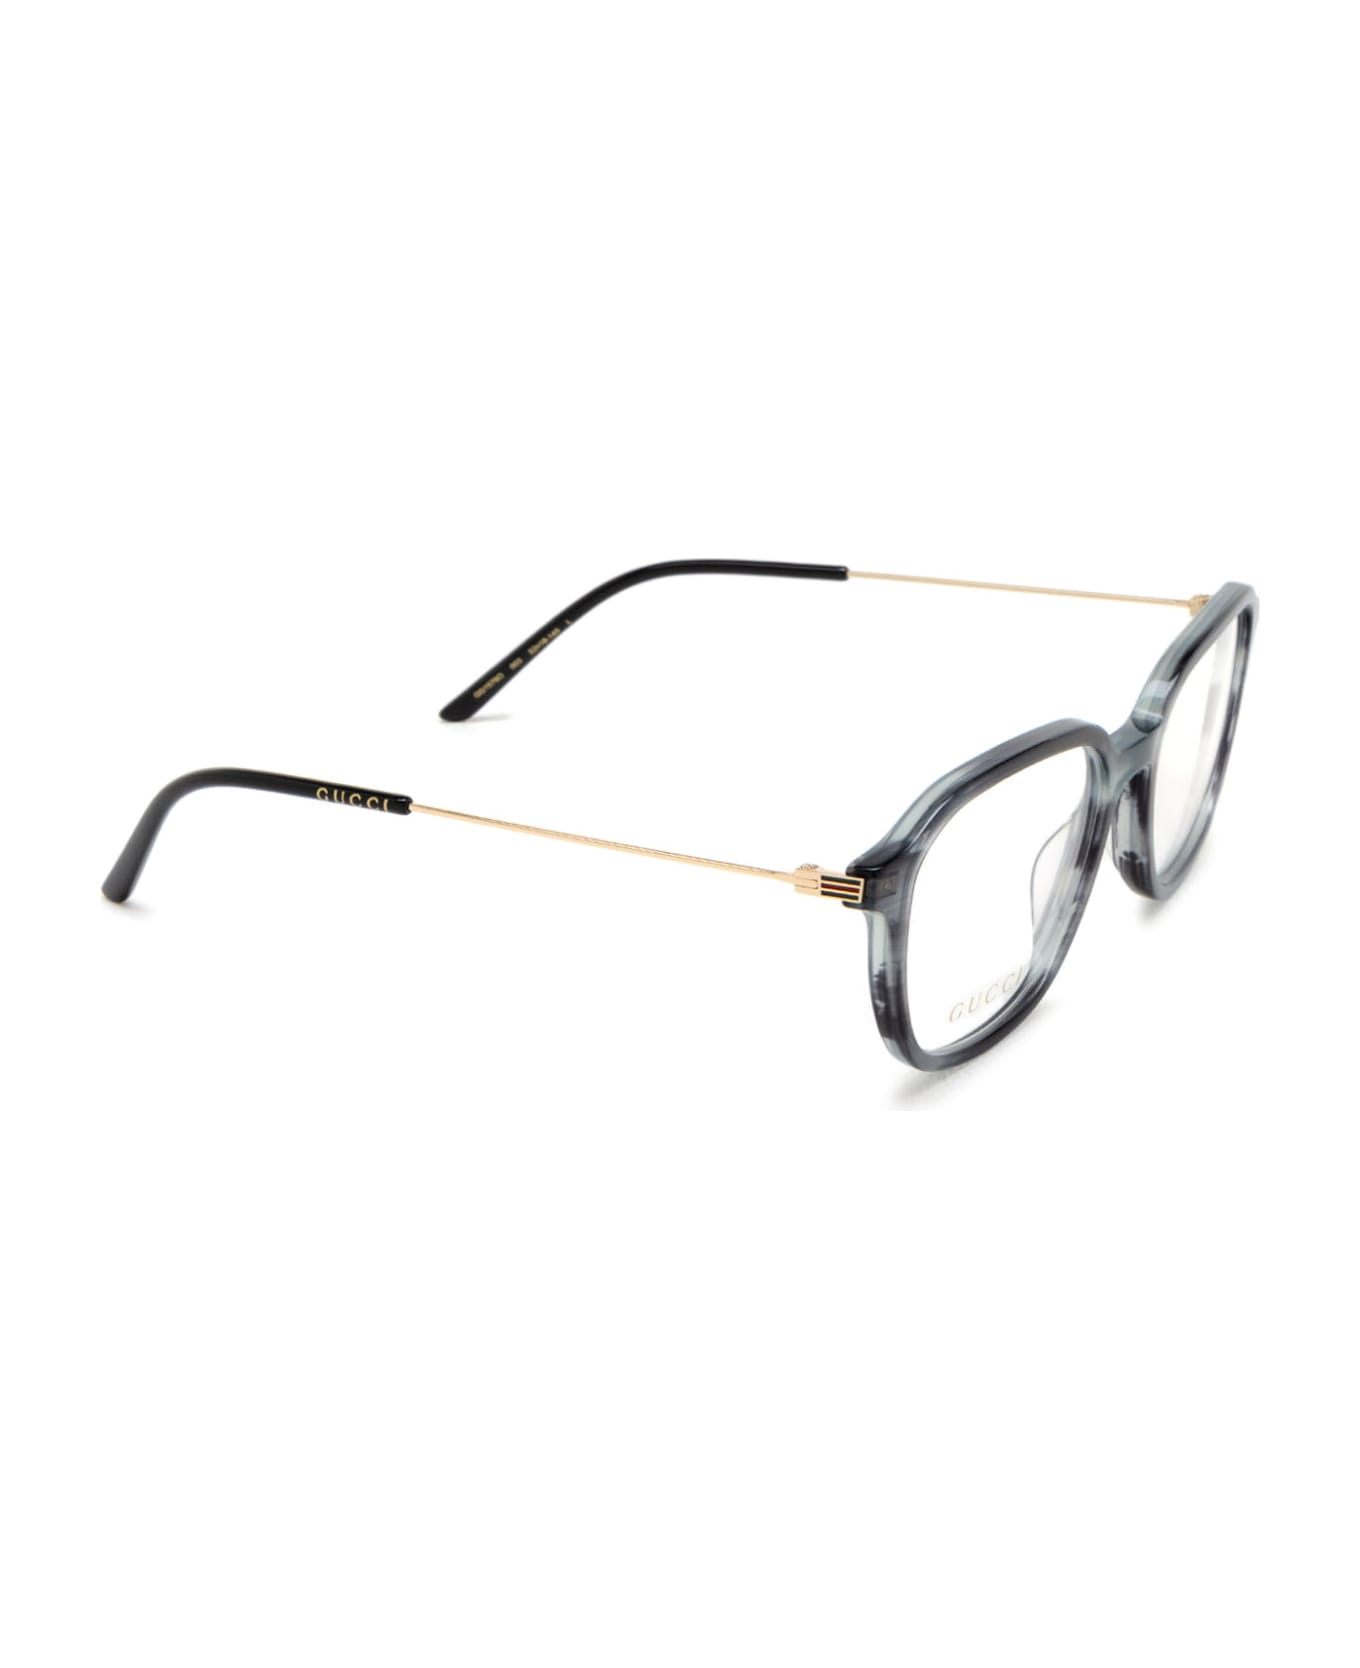 Gucci Eyewear Gg1576o Grey Glasses - Grey アイウェア